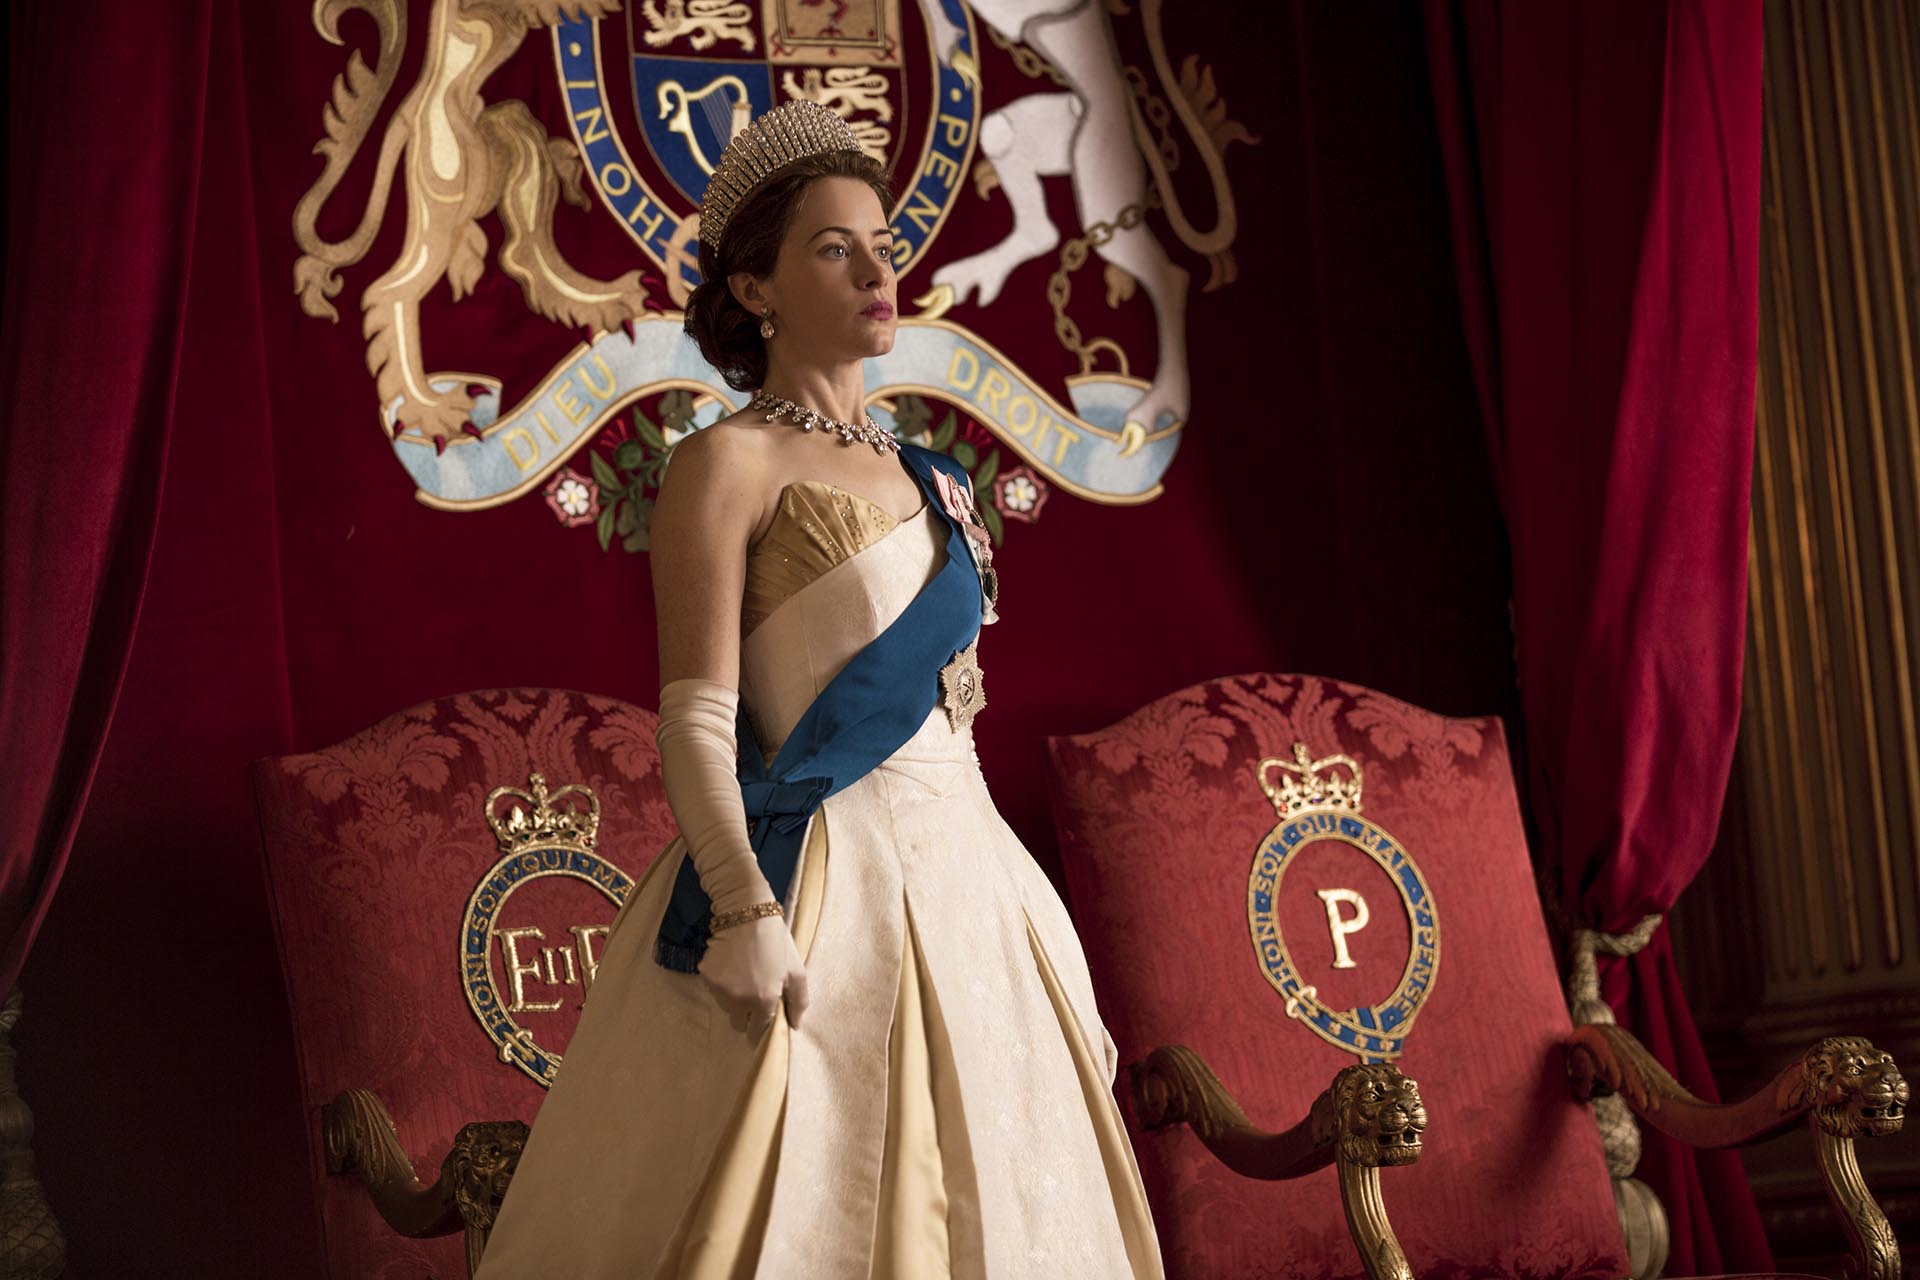 La versión más joven de Isabel de Windsor en la serie fue representada por Claire Foy, quien ganó el Emmy por este rol. (Netflix)